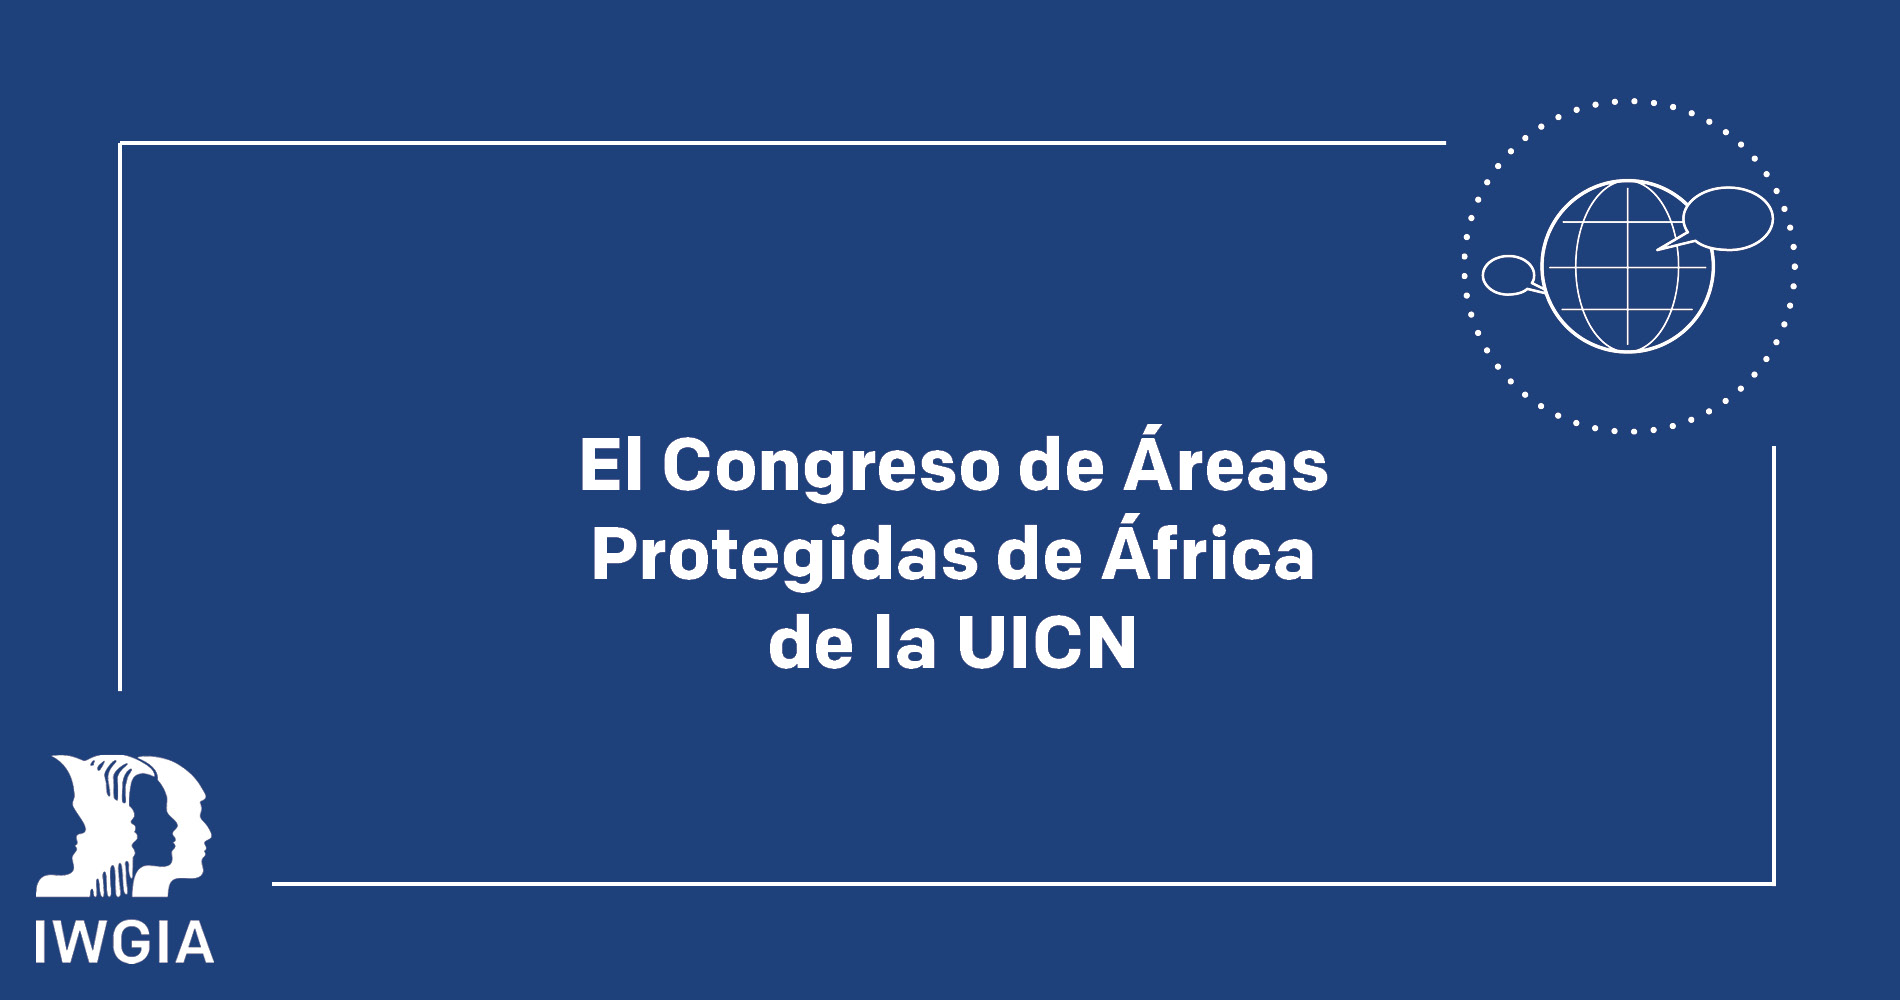 El Congreso de Áreas Protegidas de África de la UICN